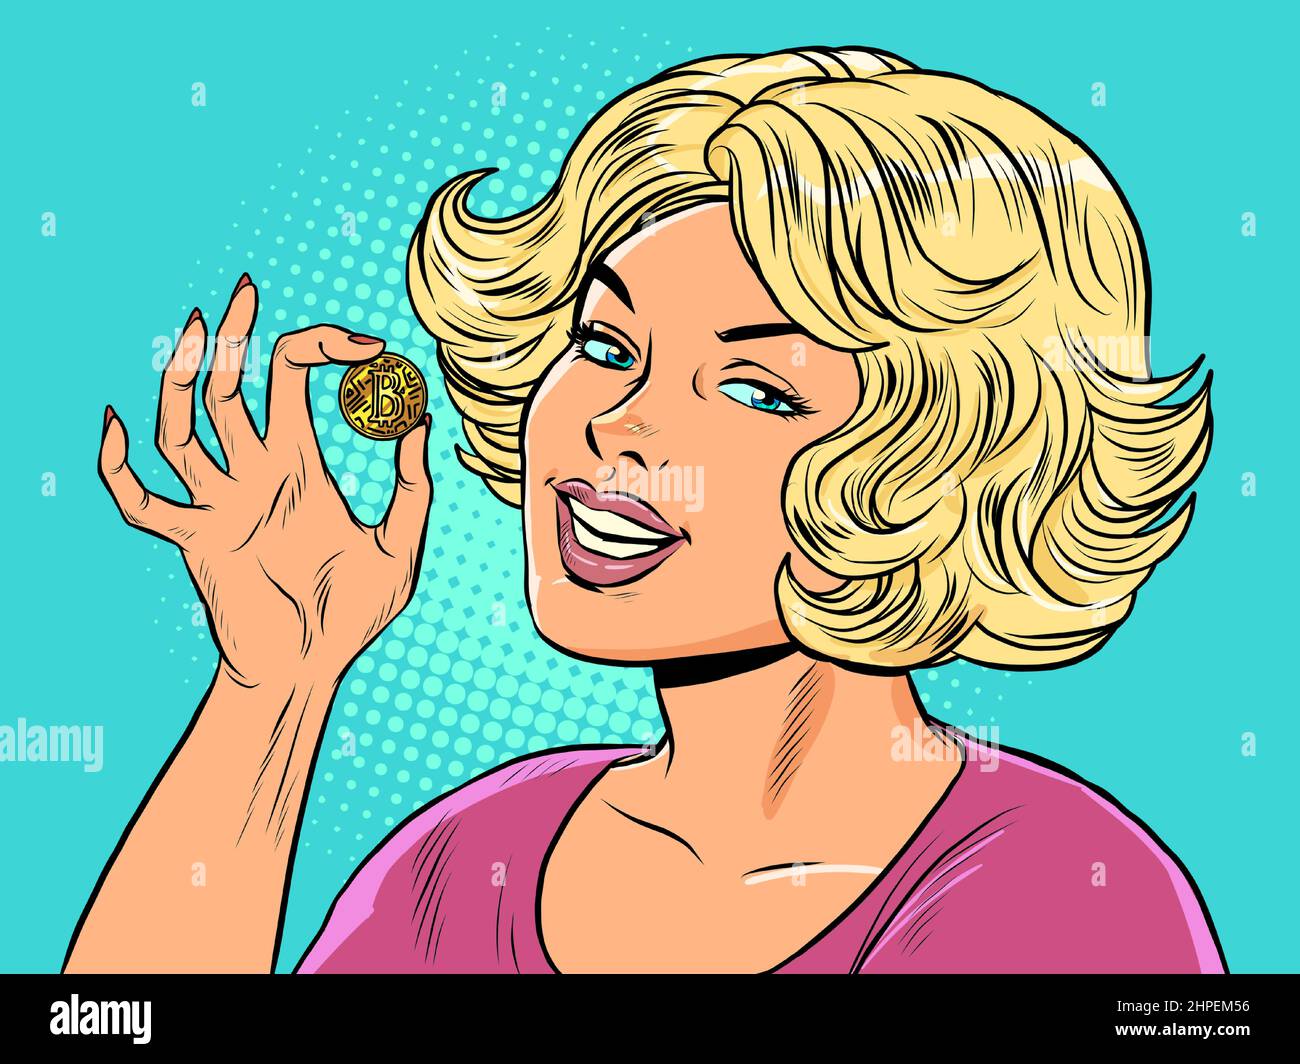 Ein blondes Mädchen hält eine Bitcoin-Münze in ihren Händen. Kryptowährung virtuelles Geld Stock Vektor